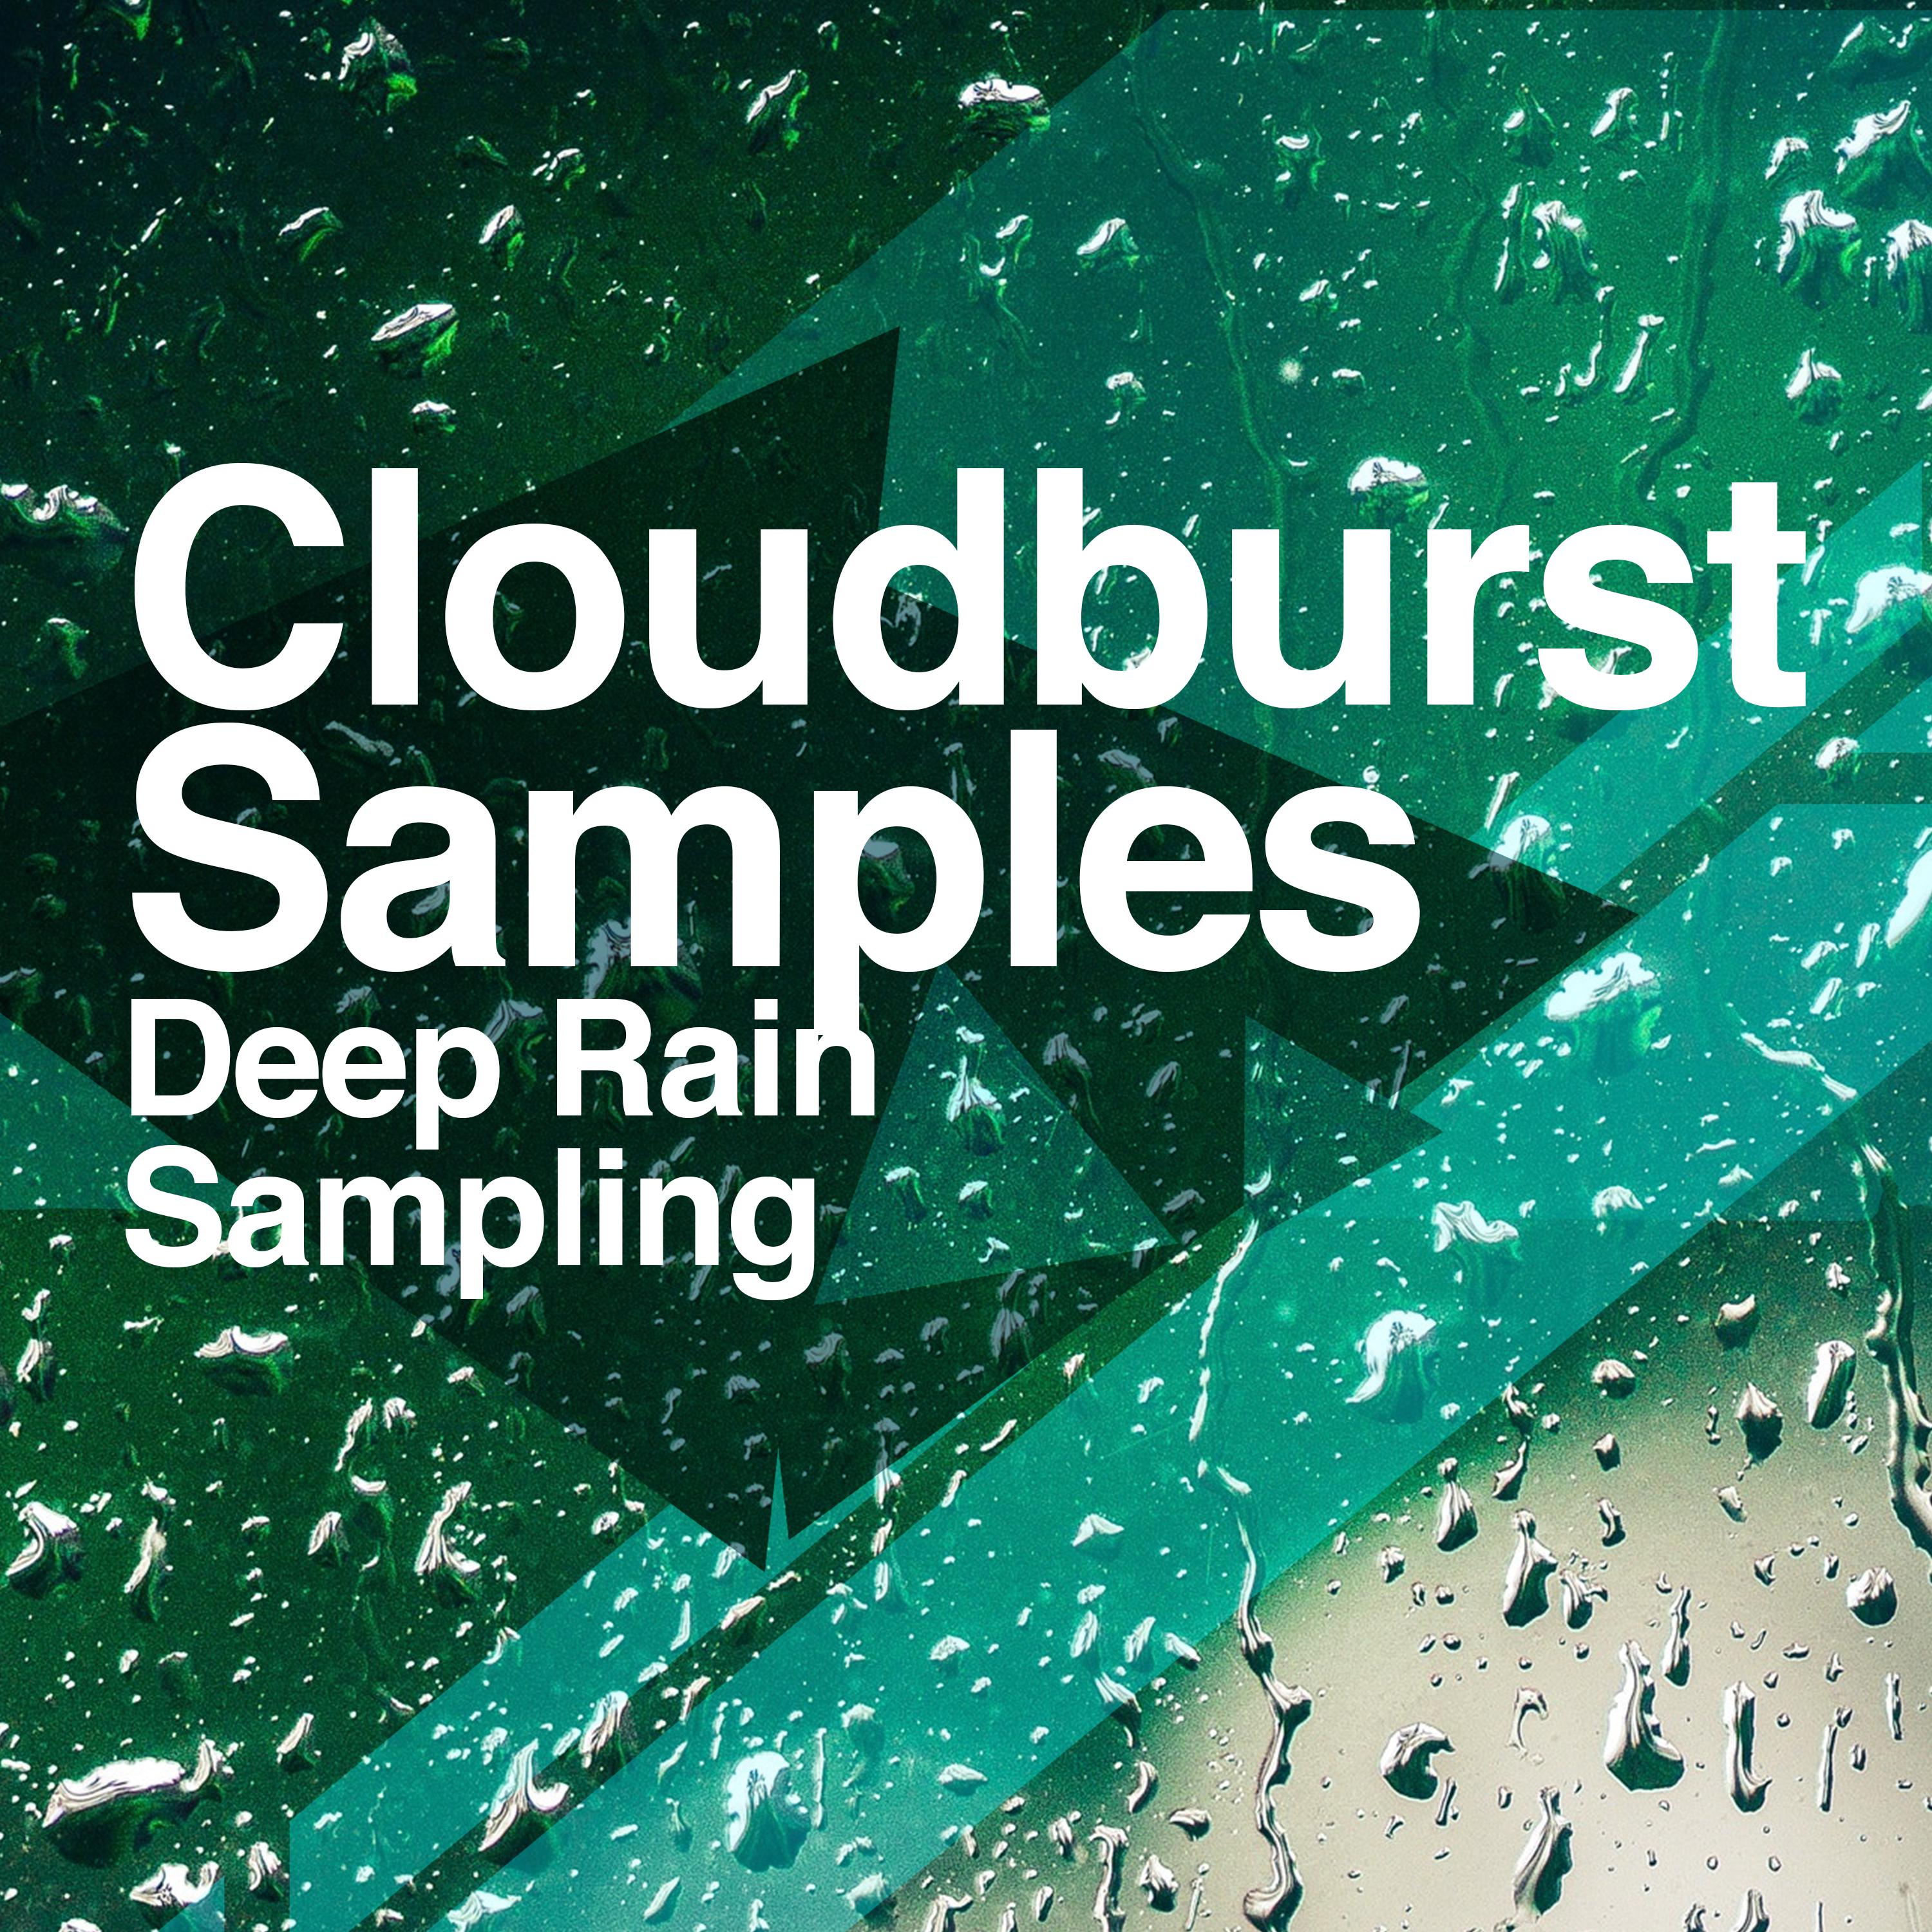 Cloudburst Samples